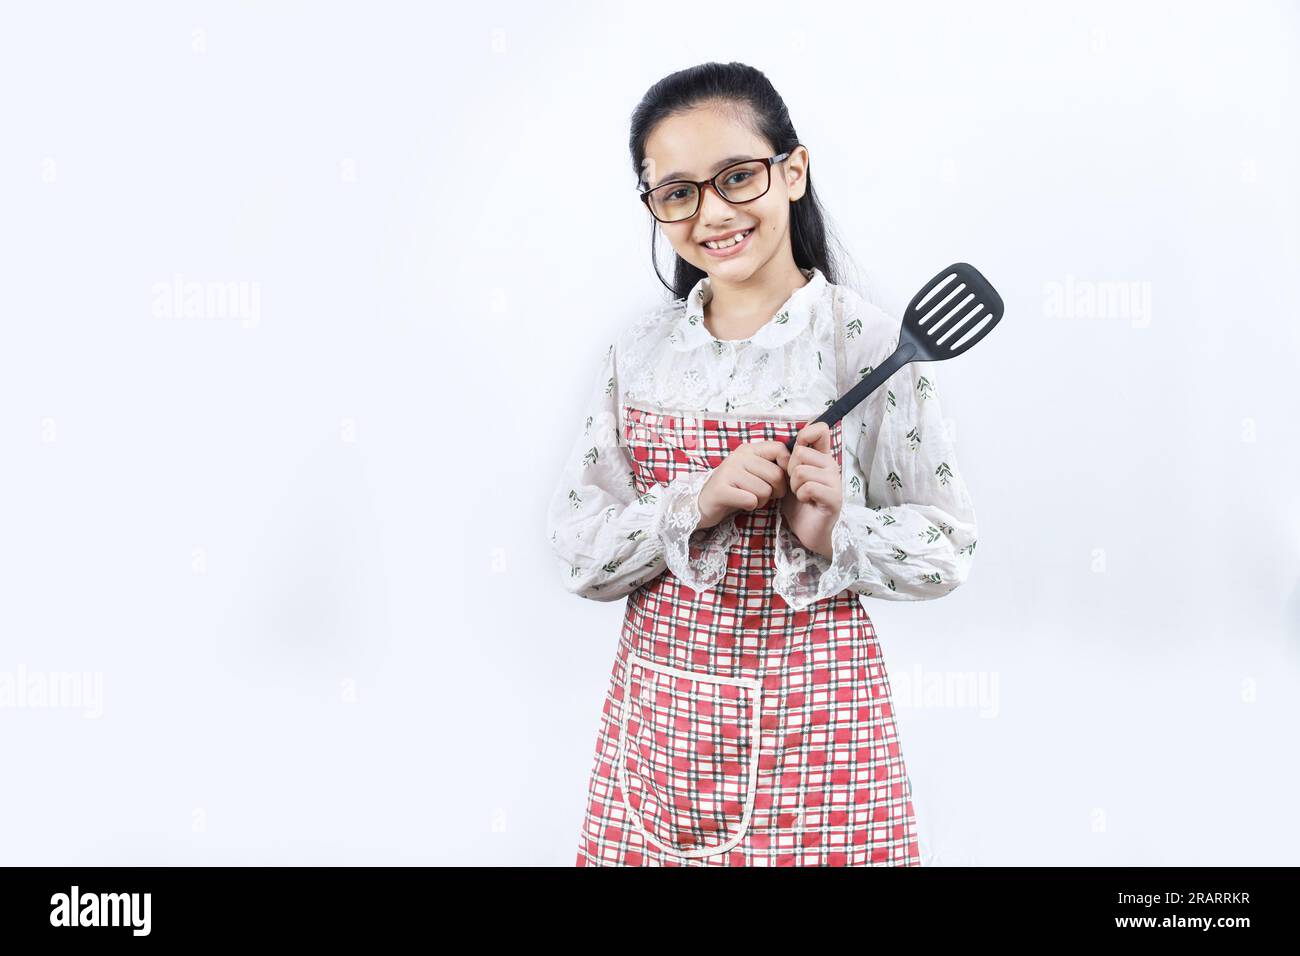 Retrato de la muchacha adolescente india feliz en la cocina que sostiene los accesorios de cocina. Rin enrollable, cuchara de freír, cucharón, sartén. Joven alegre y alegre Foto de stock